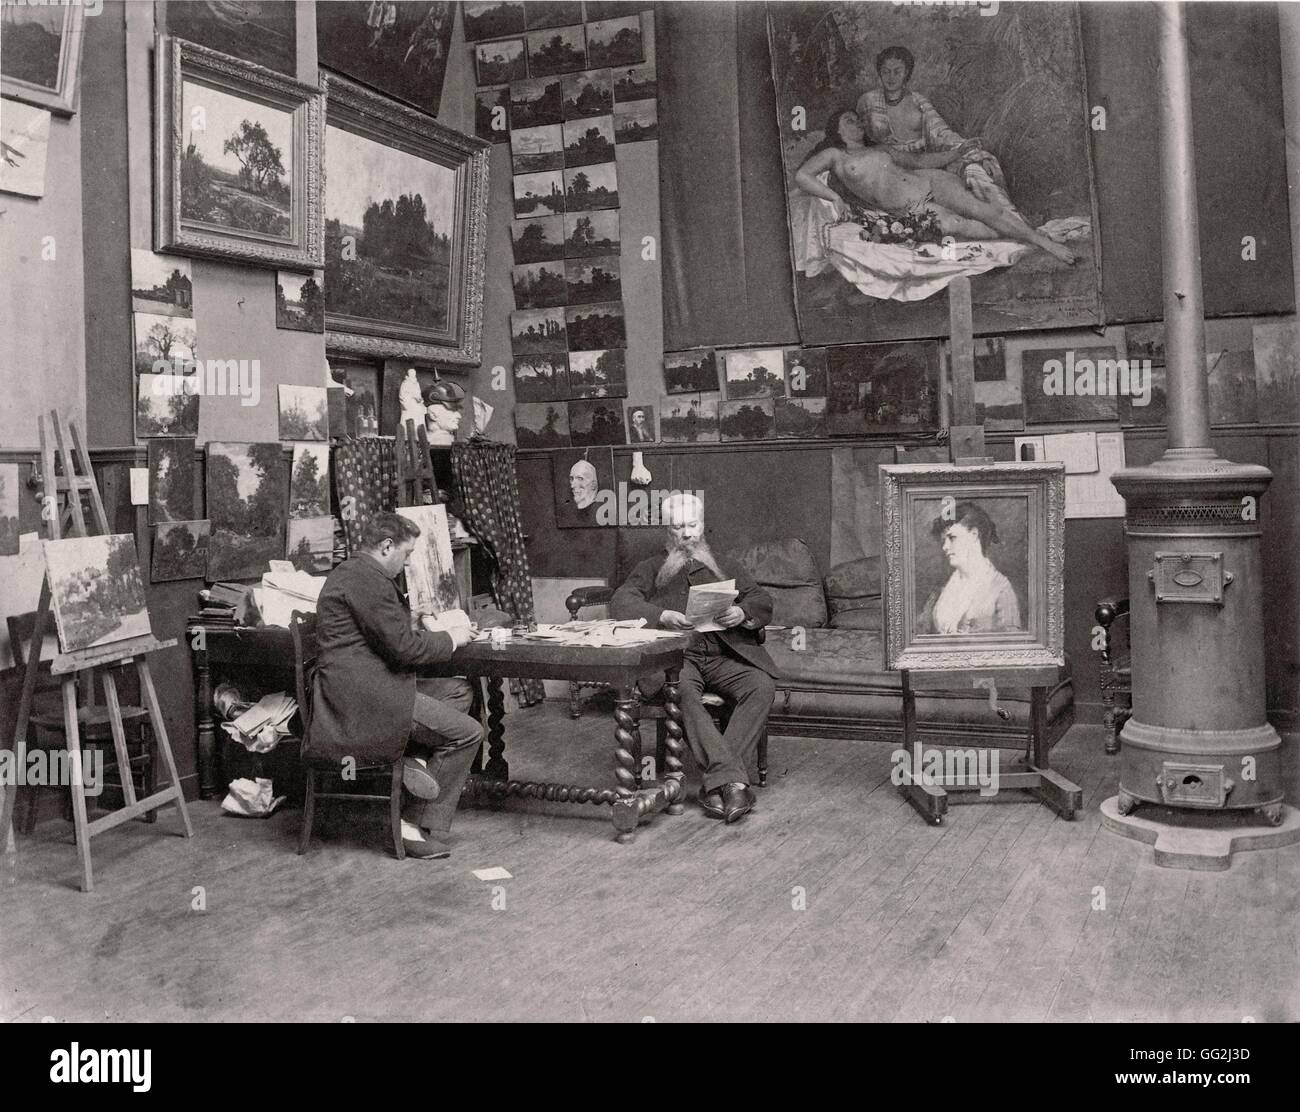 Französischer Maler Hector Hanoteau in seinem Atelier in Paris. Foto von Edmond Bénard c.1885. Albumen print. Stockfoto